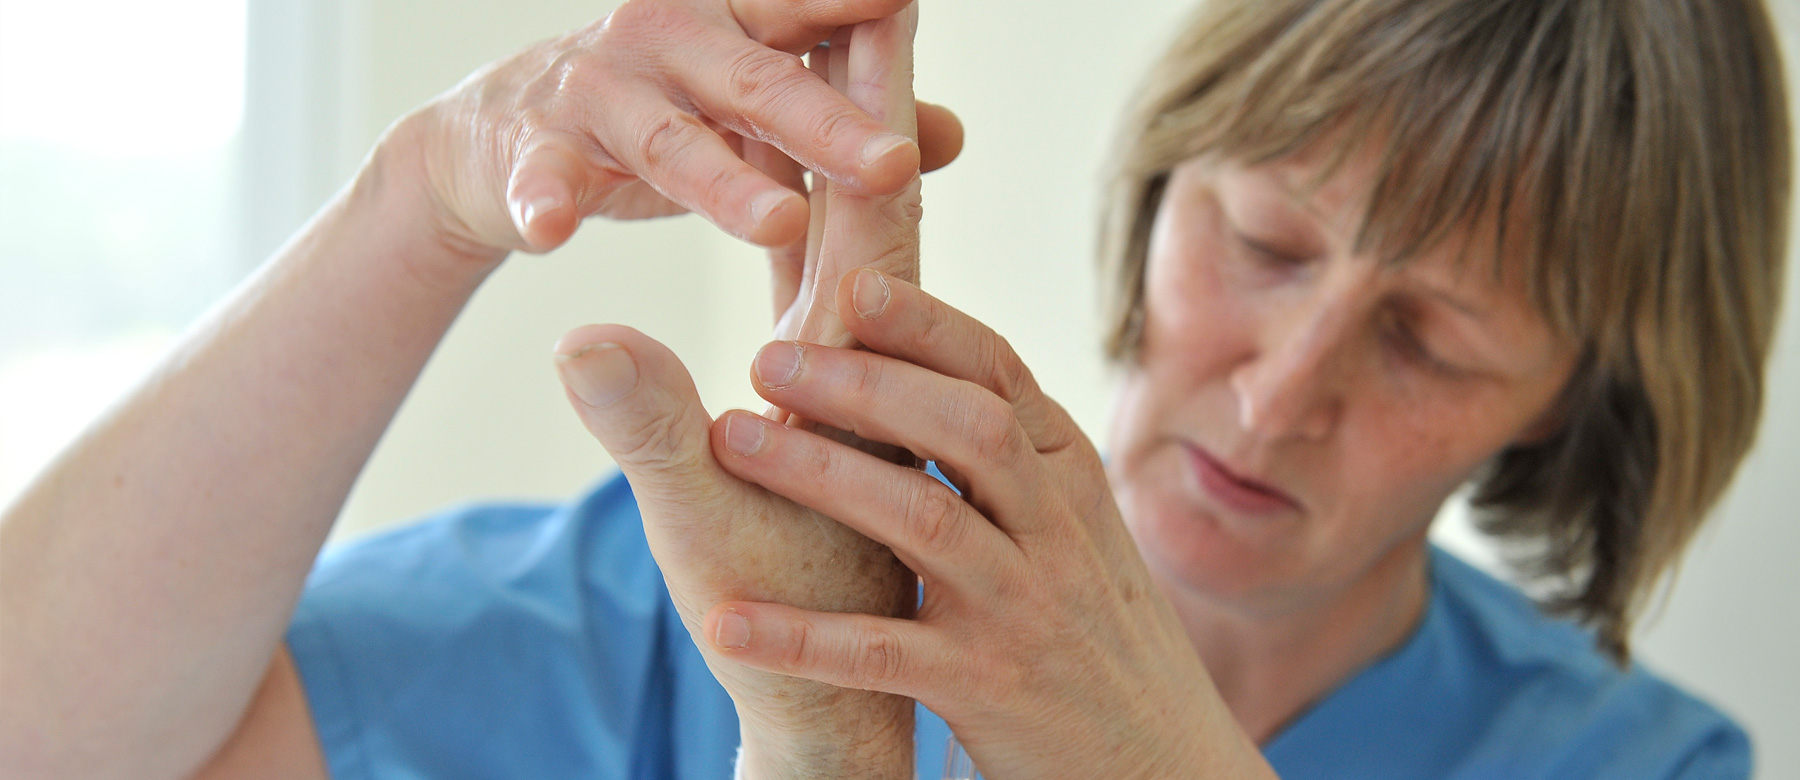 Physiotherapeutin behandelt die Hand eines Patienten.